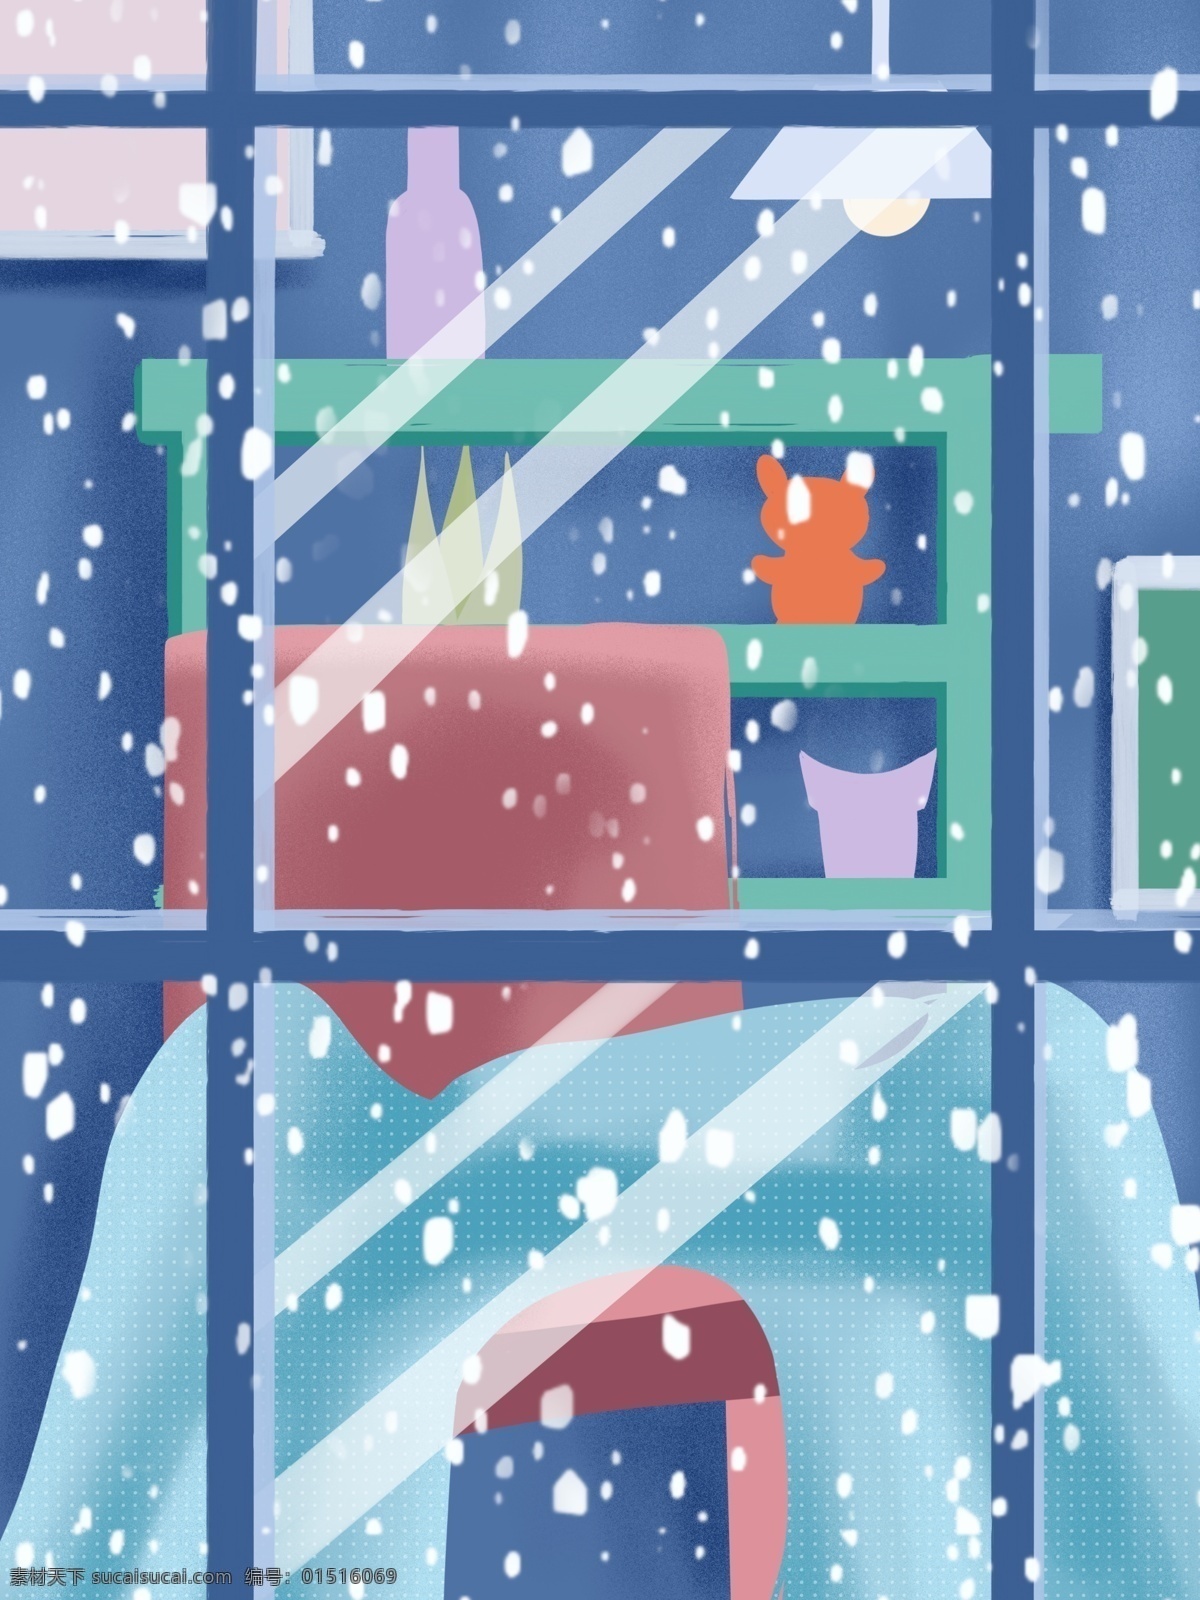 冬季 小雪 窗外 风景 背景 窗外风景 窗帘 传统节气 小雪节气 中国风节气 温馨室内布置